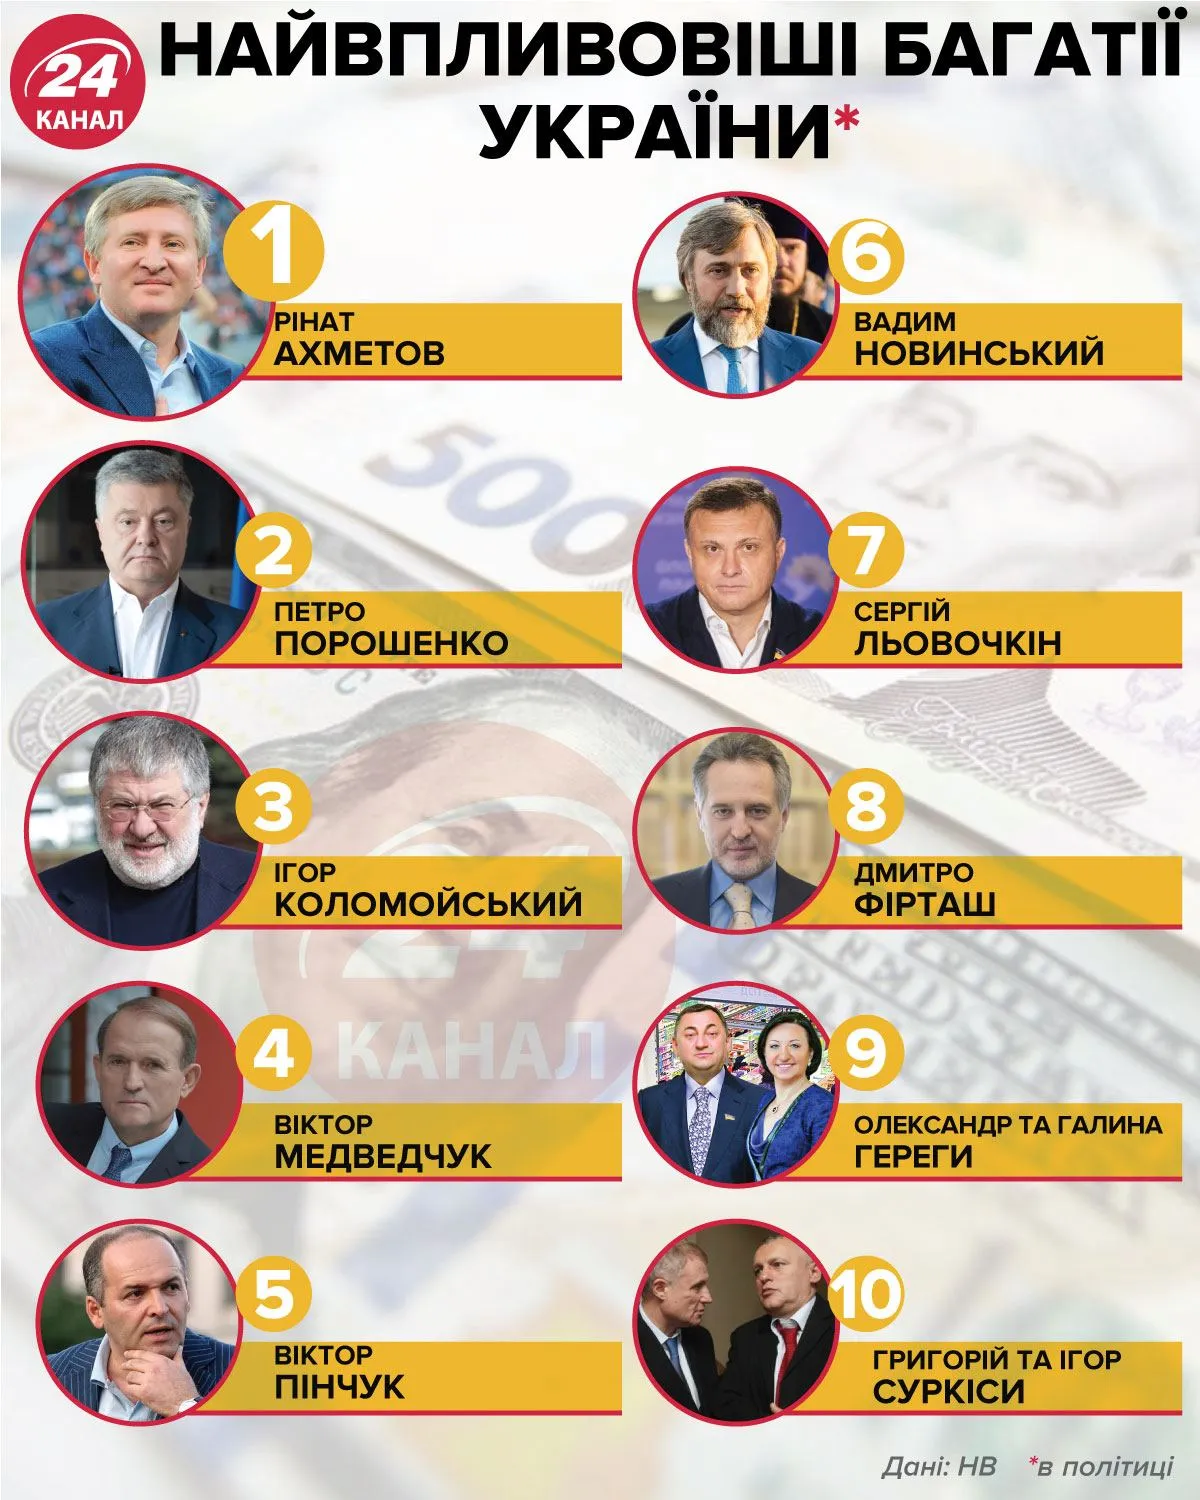 Самые влиятельные богачи Украины / Инфографика 24 канала